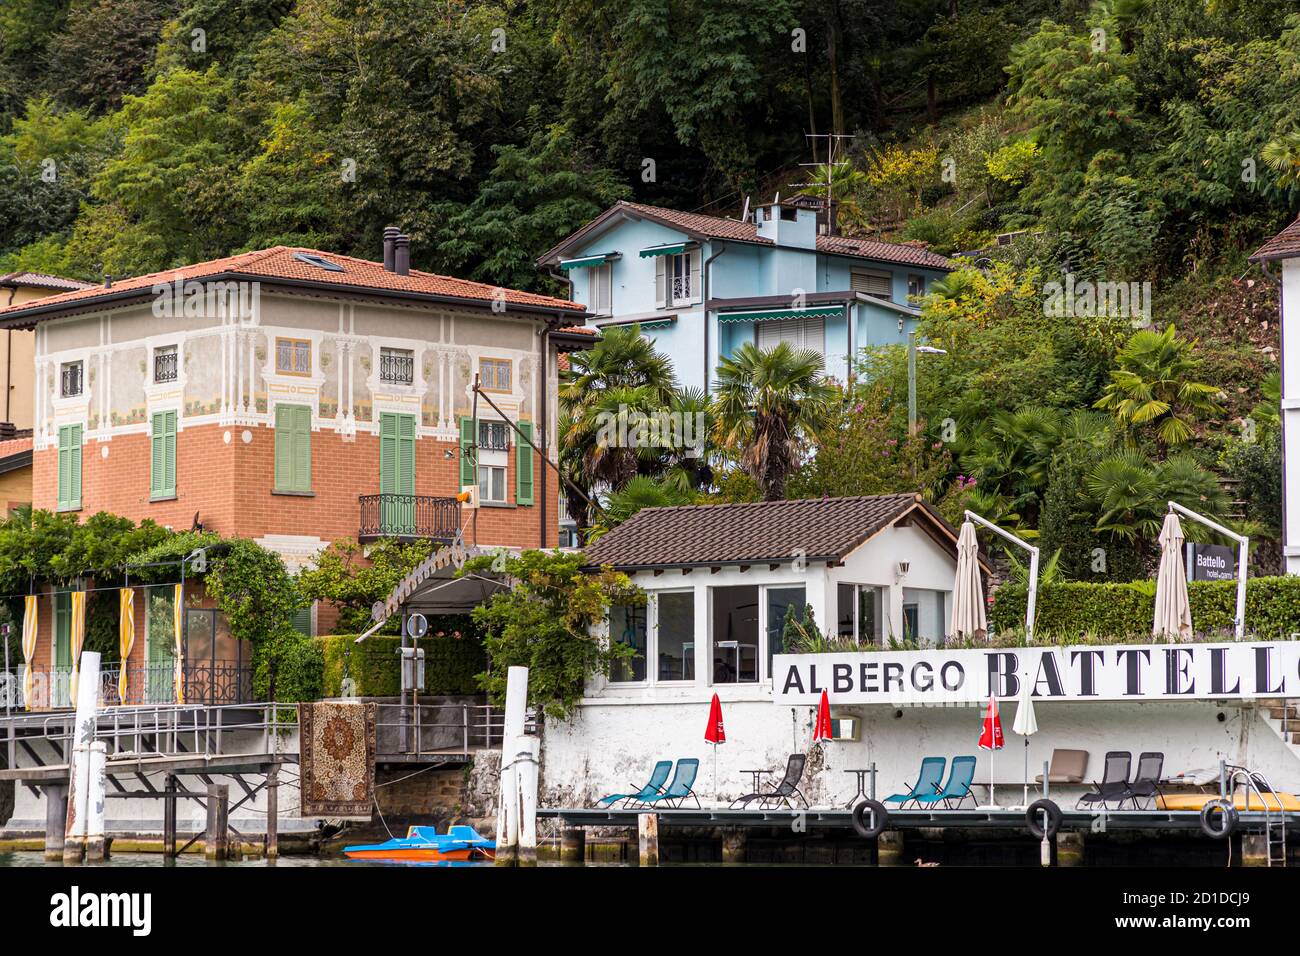 The town of Morcote on Lake Lugano in Ticino, Circolo di Carona, Switzerland Stock Photo